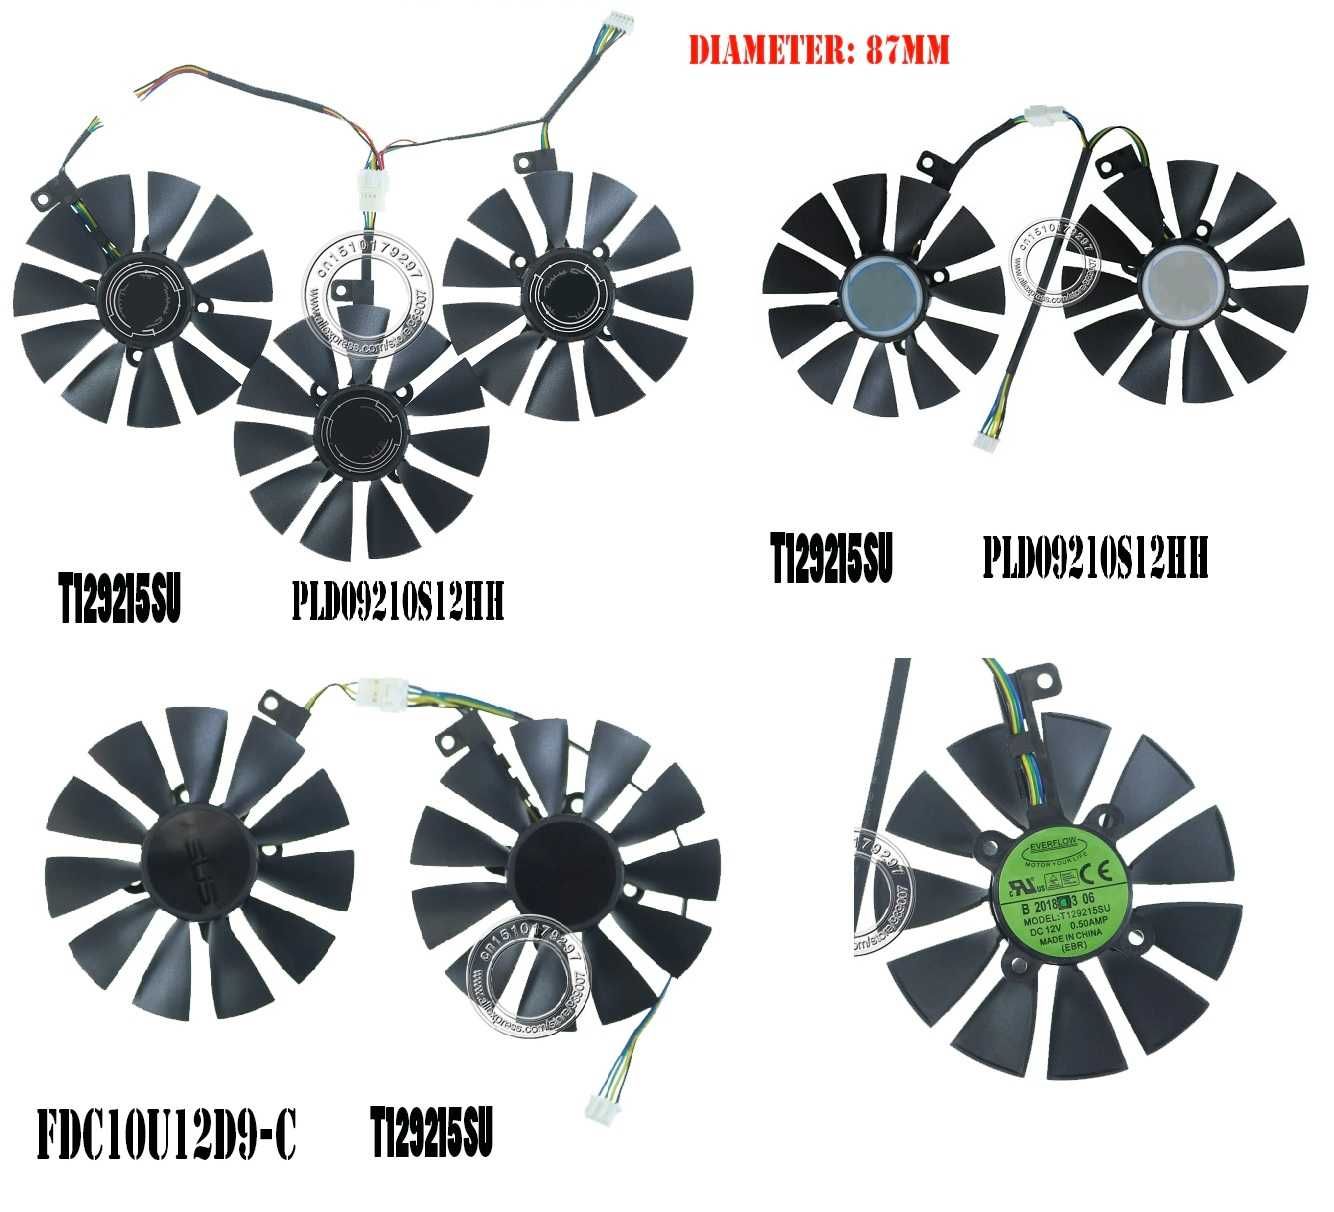 Вентиляторы 87мм Asus dual strix expedition pld09210s12hh t129215su